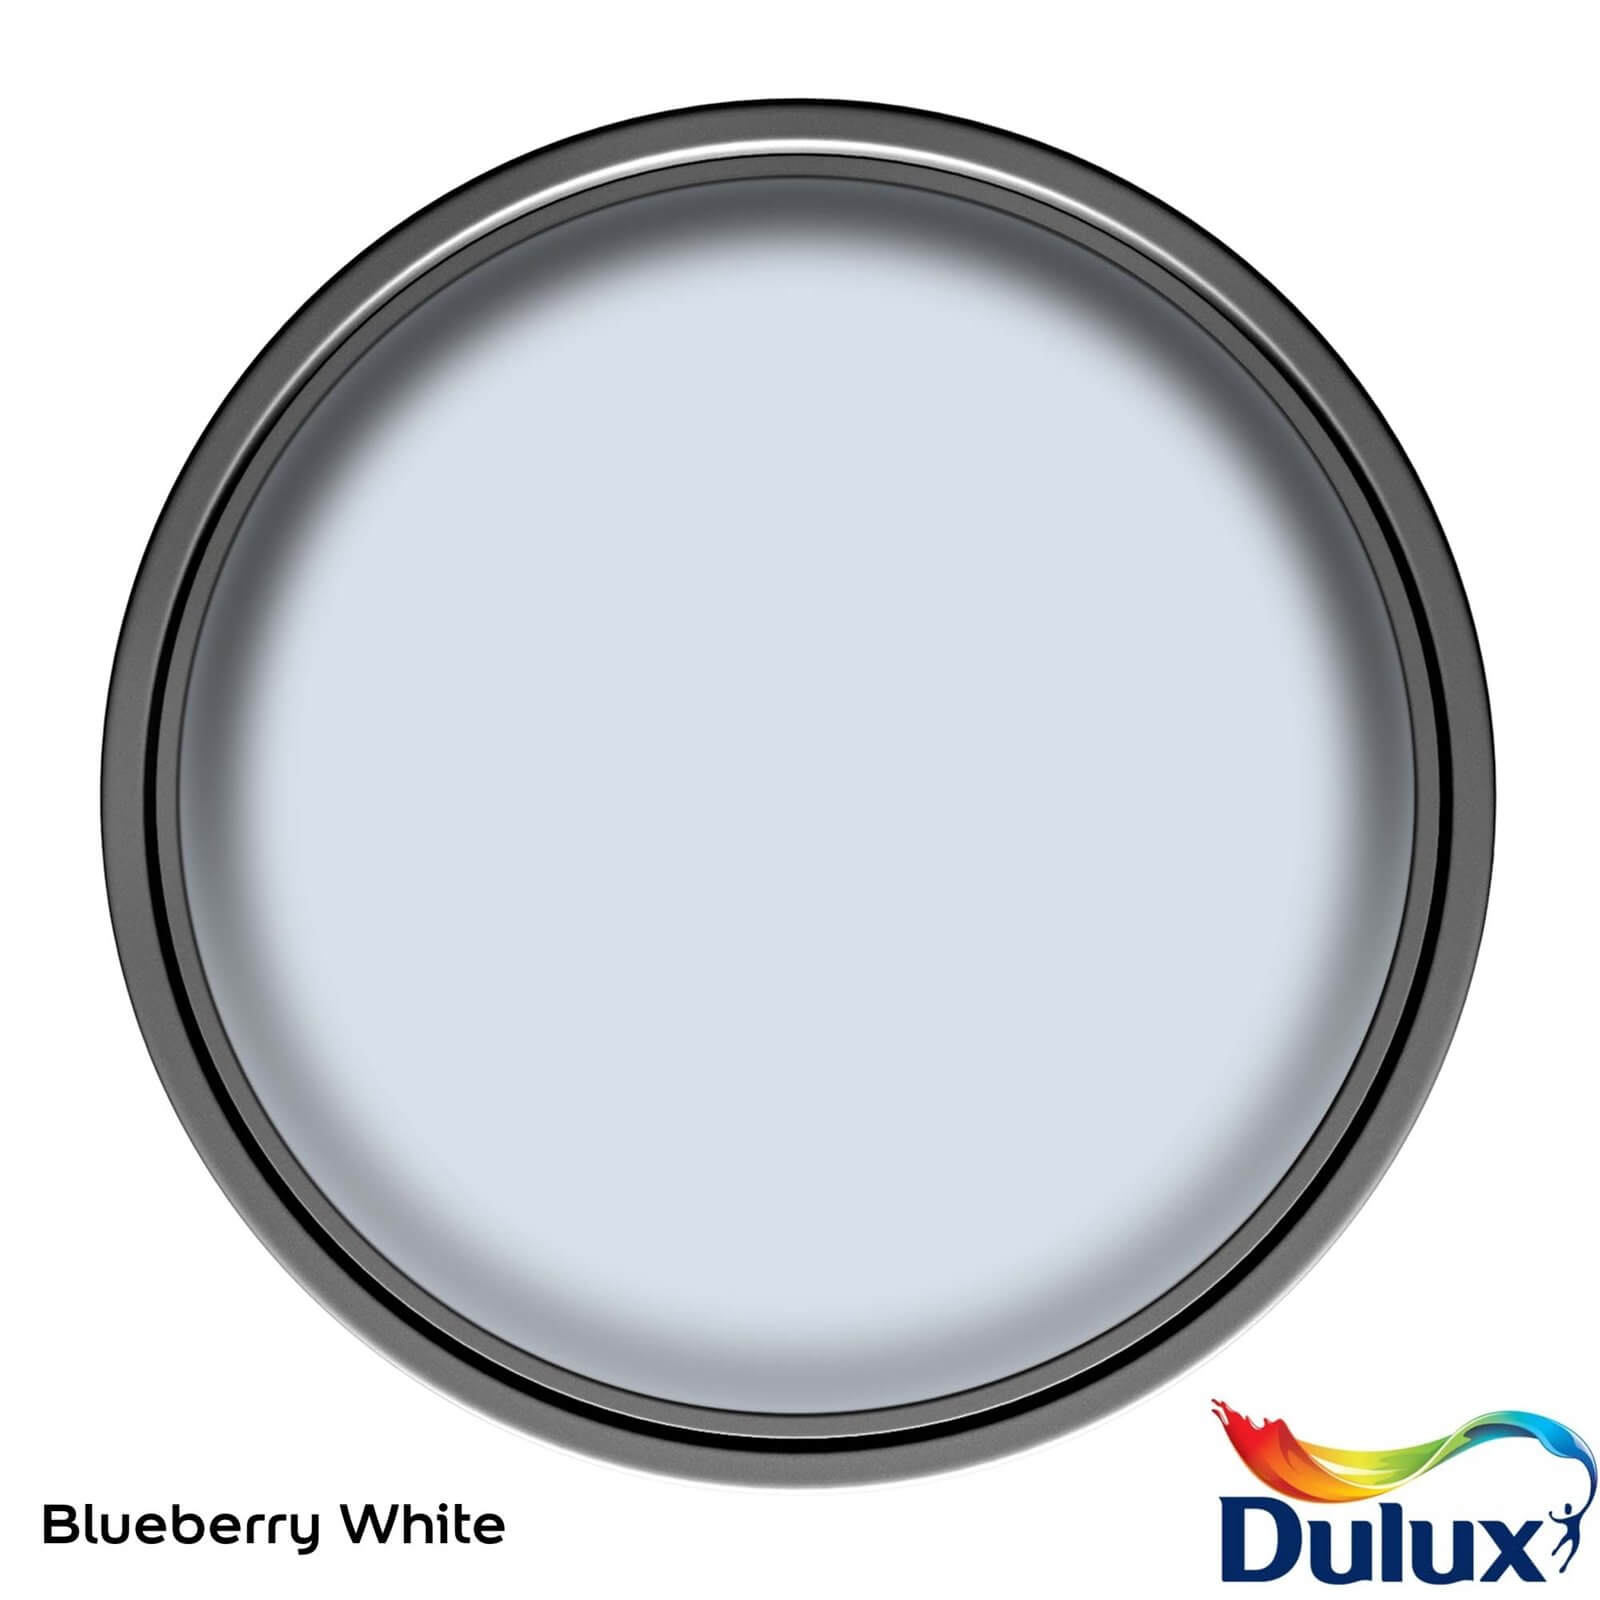 Dulux Once Blueberry White - Matt Paint - 2.5L